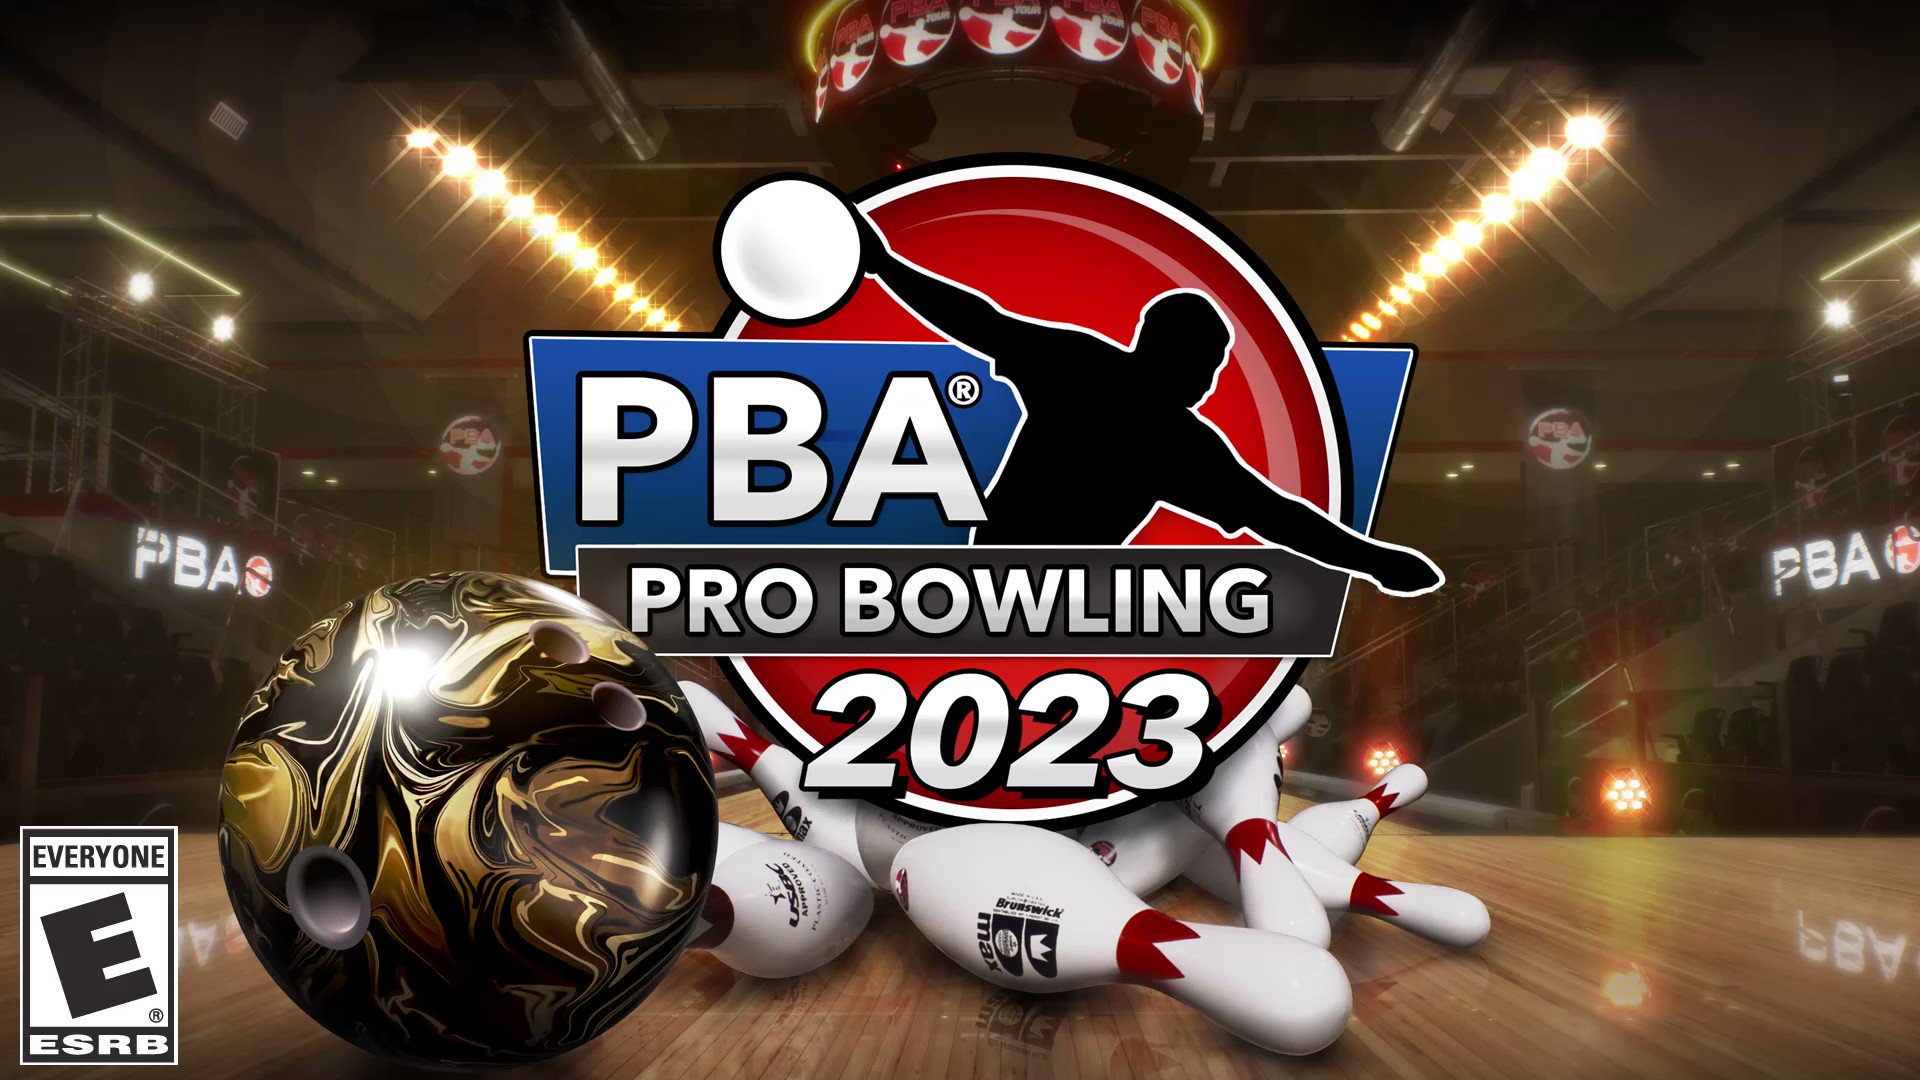 PBA Pro Bowling 2023 (@pbaprobowling) / Twitter